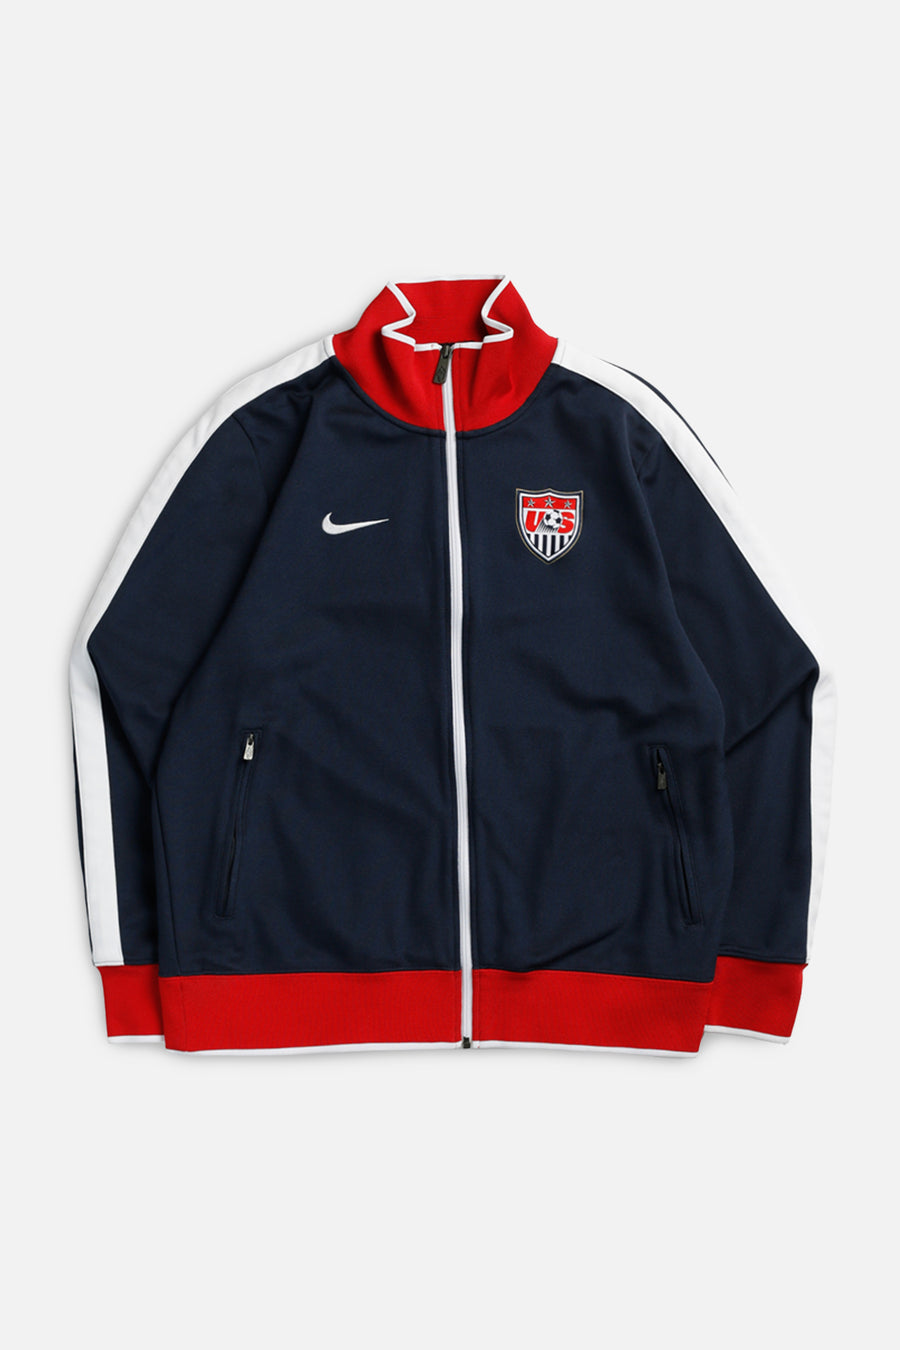 Vintage USA Soccer Track Jacket - L